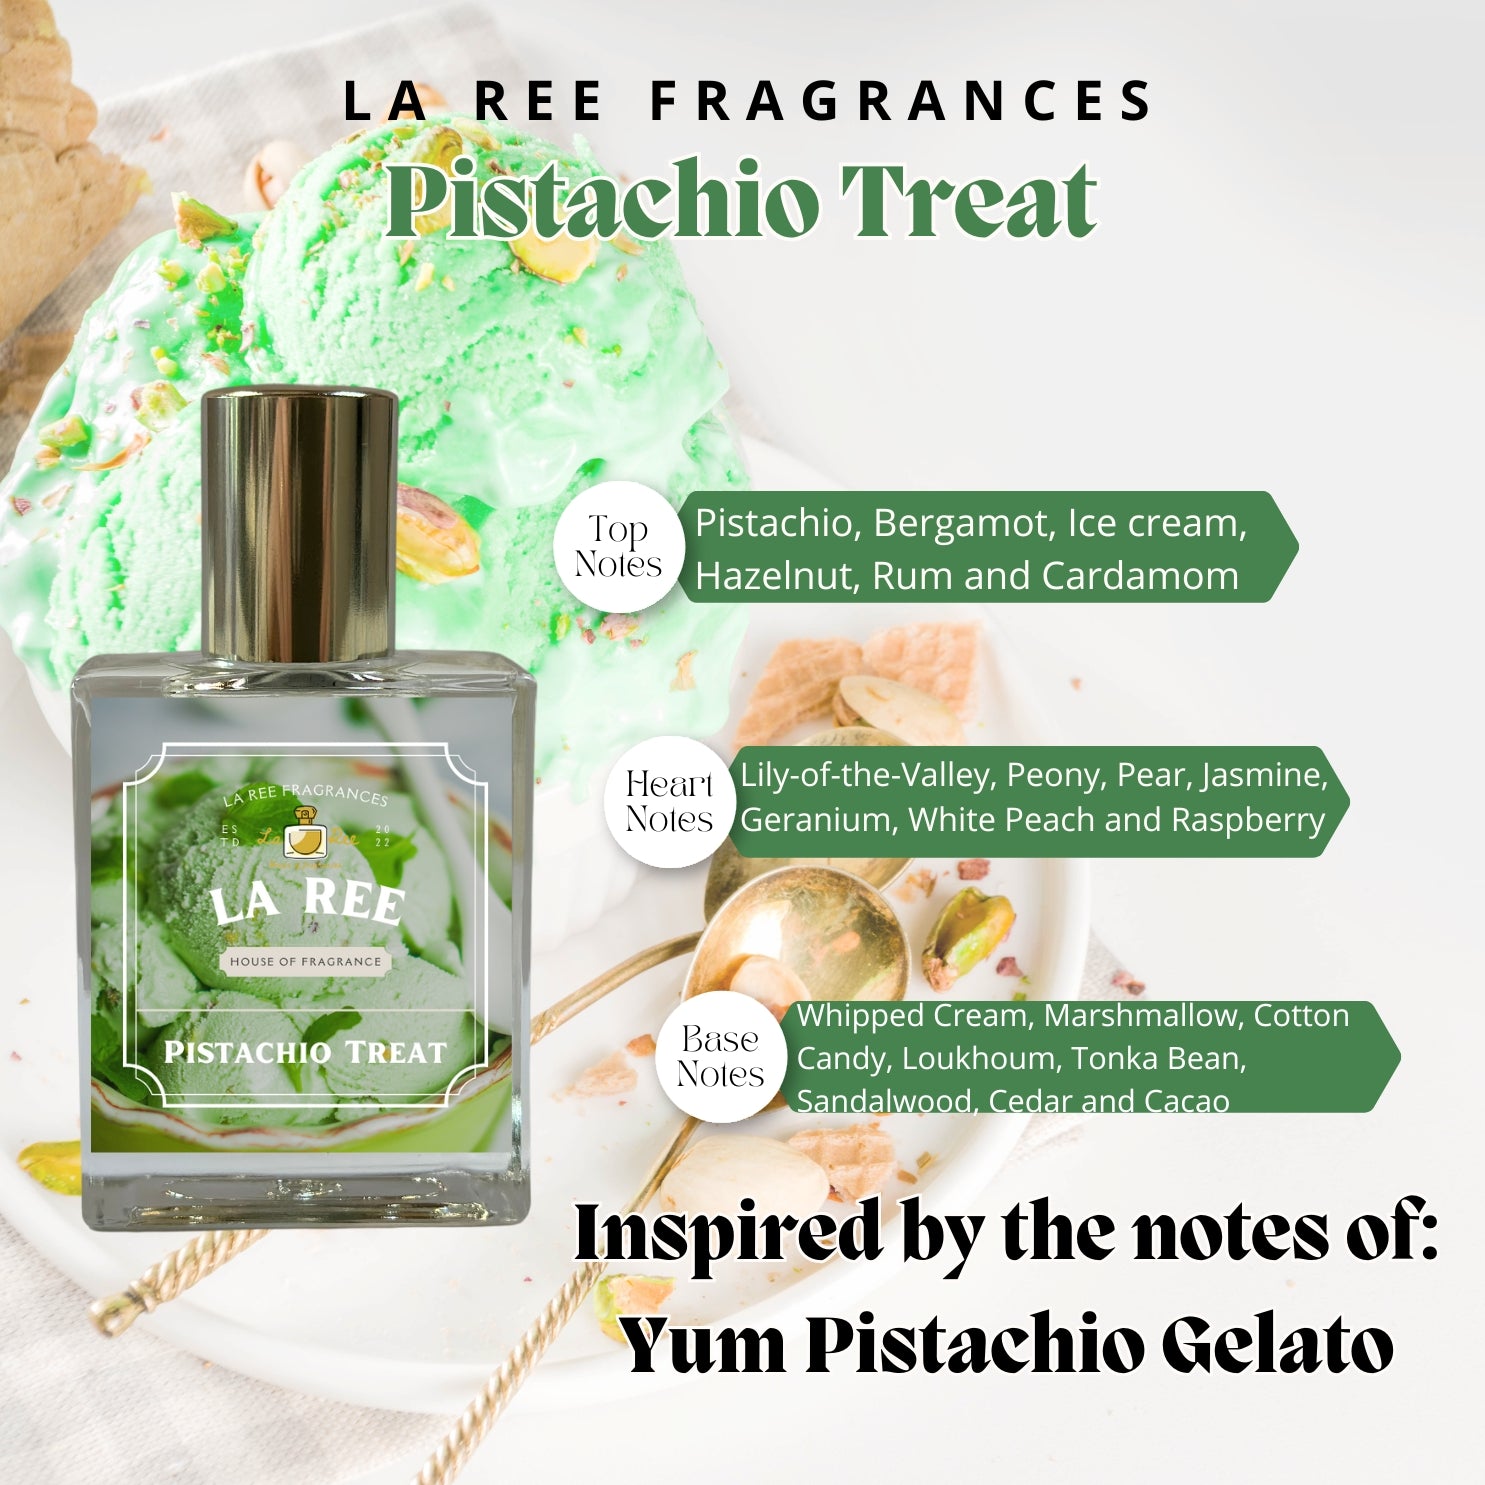 La Ree Pistachio Treat Inspired by Kayali® Yum Pistachio Gelato